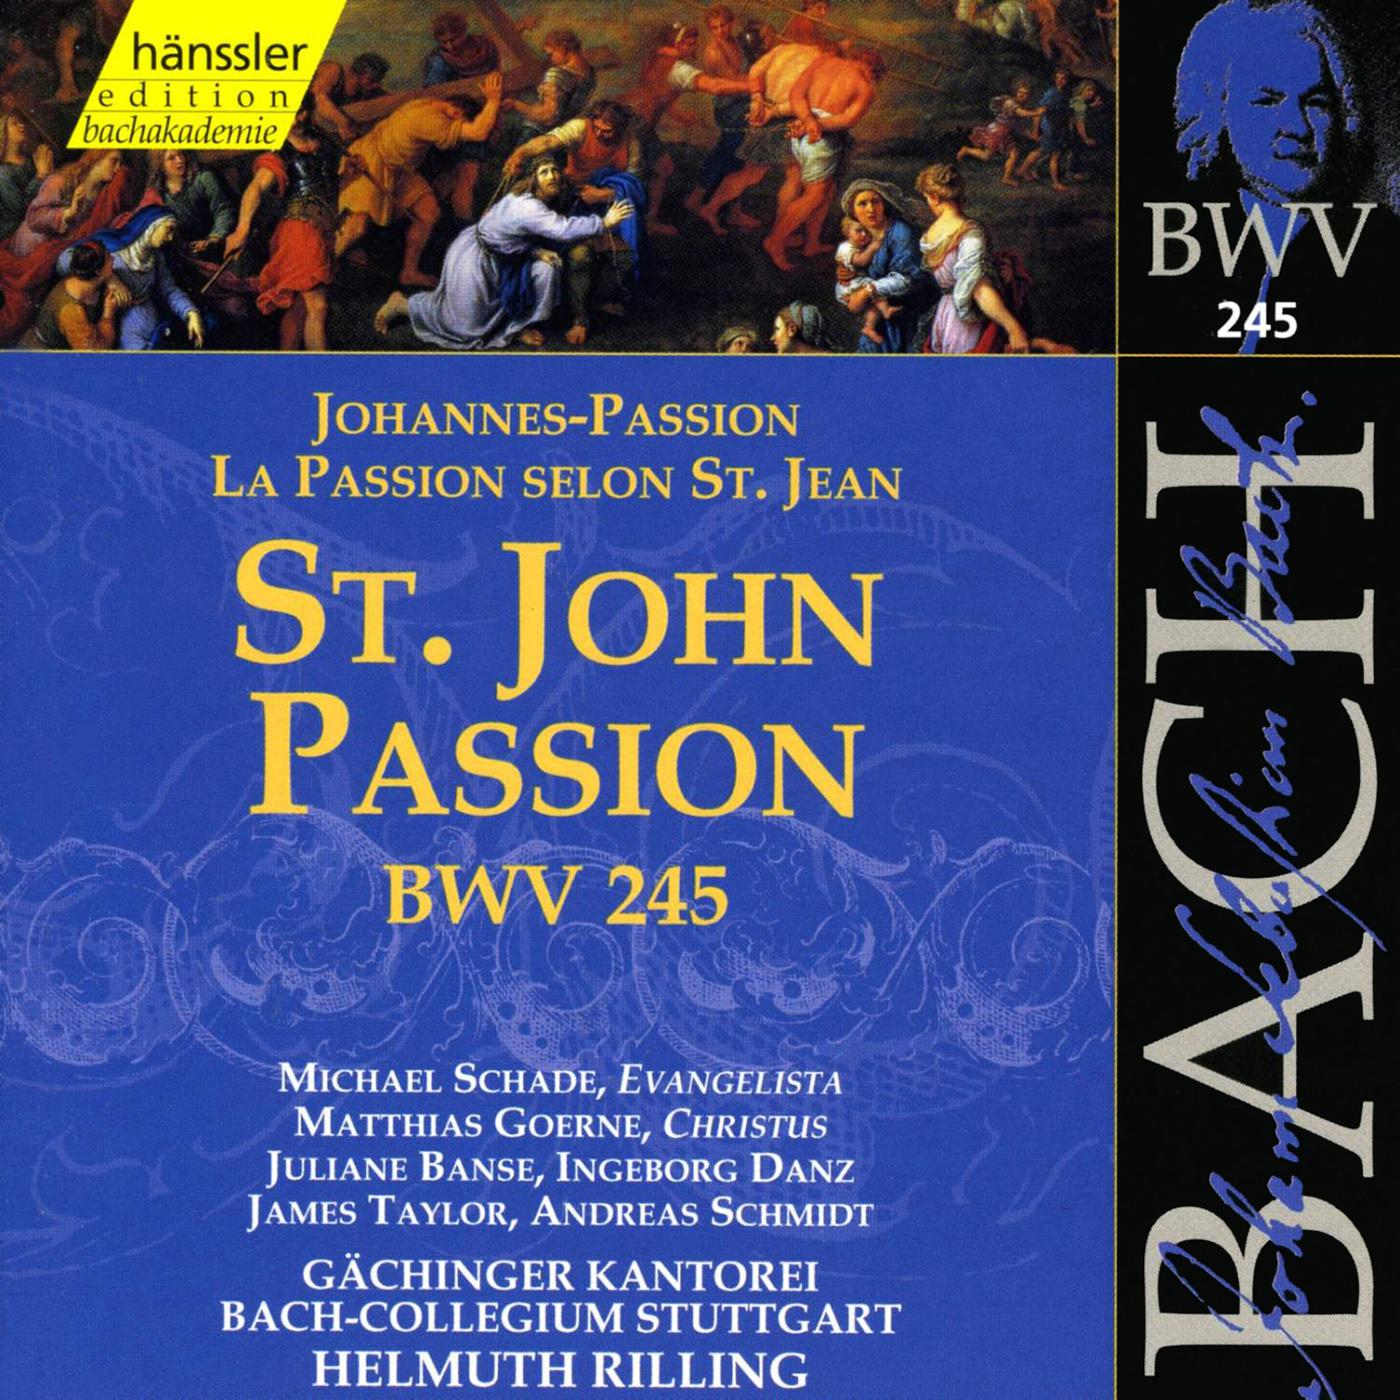 St. John Passion, BWV 245: Und die kriegsknechte flochten (Tenor, Chorus, Bass)